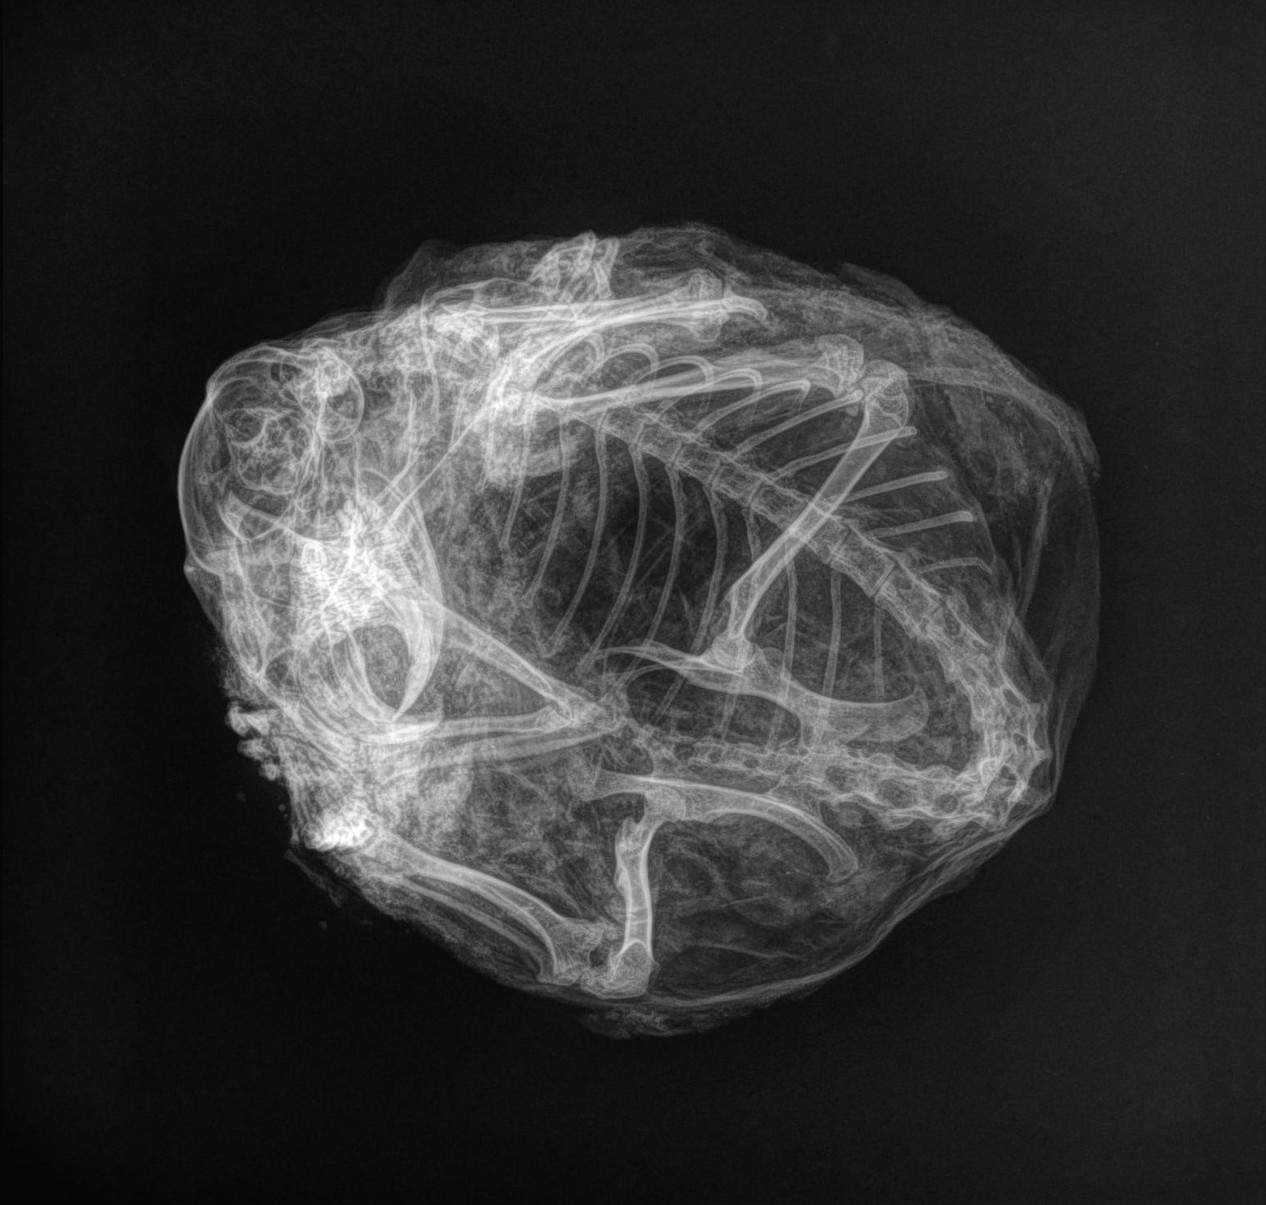 Röntgenfoto's toonden aan dat het skelet van de gemummificeerde eekhoorn intact was, zelfs na 30,000 jaar.